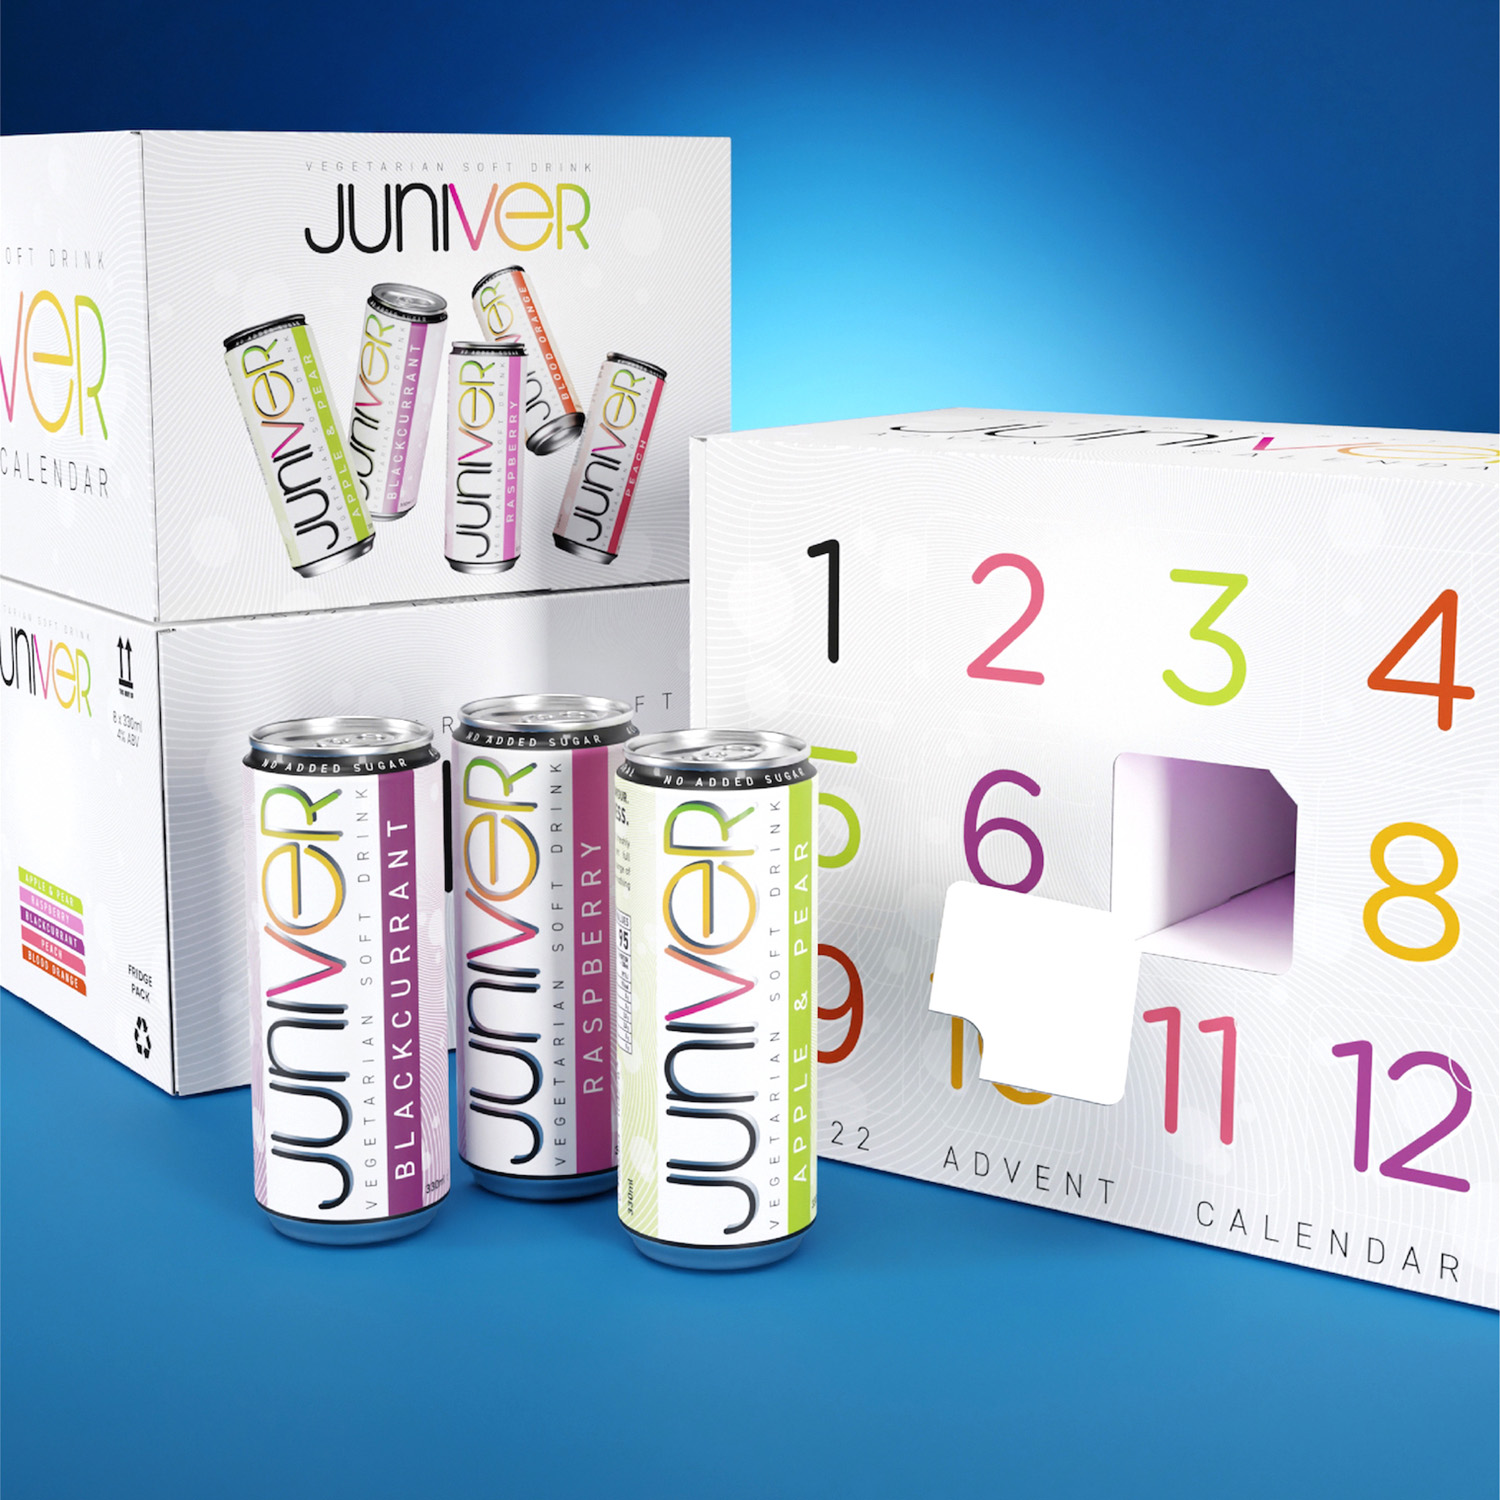 Juniver Vegetarian Soft Drink Packaging Design